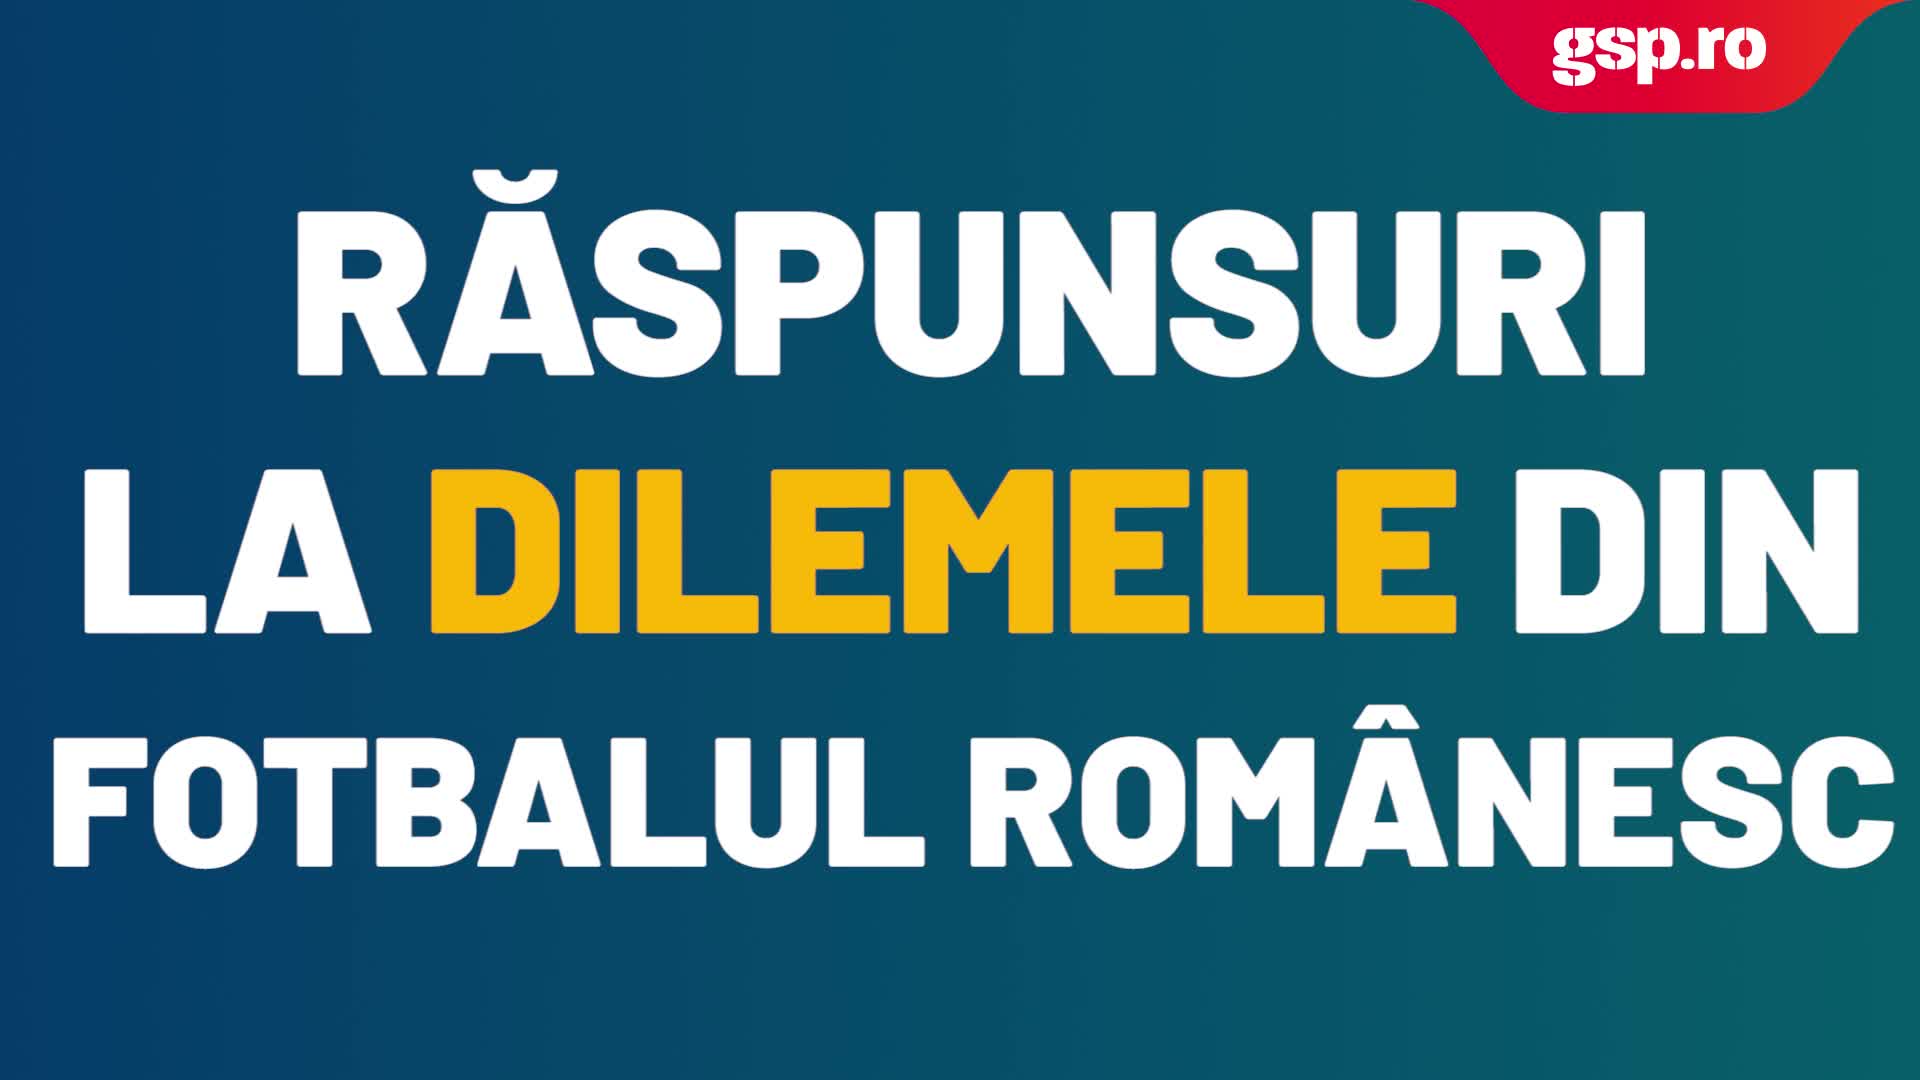  Răspunsuri la dilemele din fotbalul românesc: De ce au fost alese doar primele 6 echipe din Liga 2?